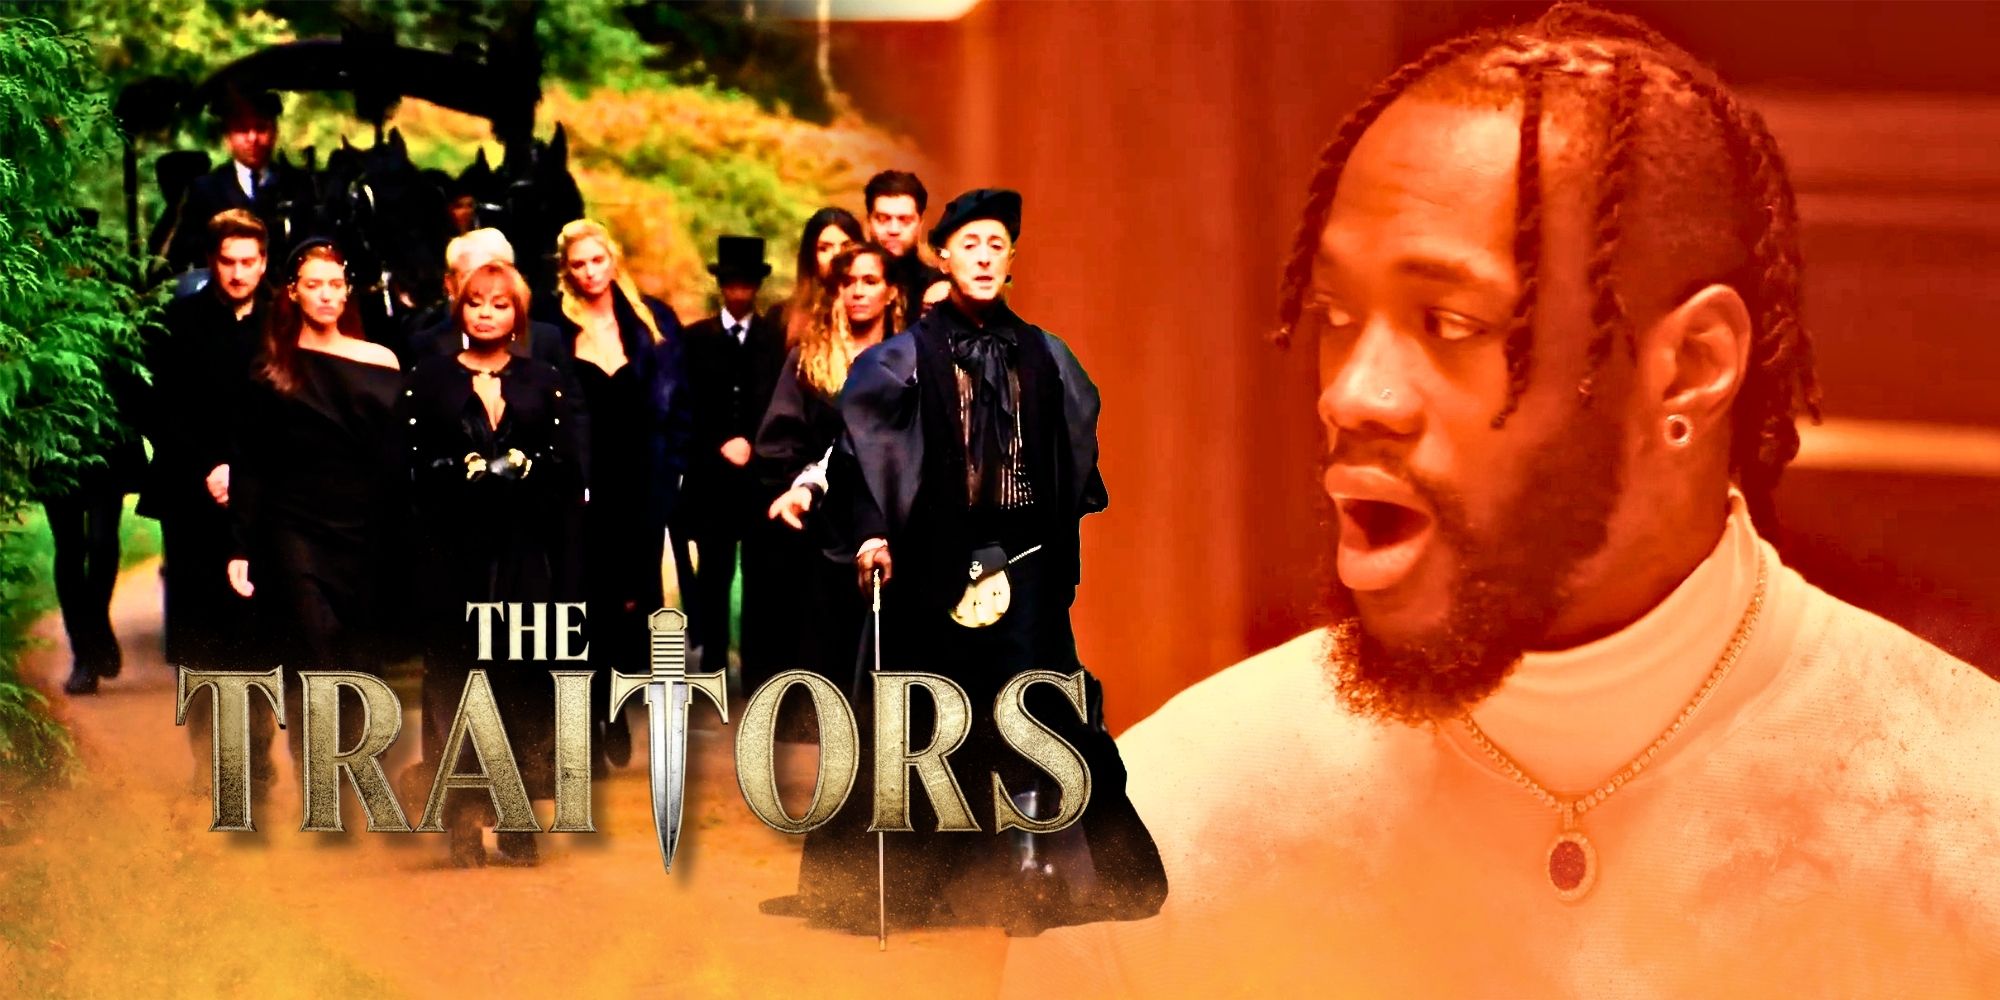 El elenco estadounidense de The Traitors está siendo desafiado por un asesinato que cambia las reglas del juego (Spoilers)